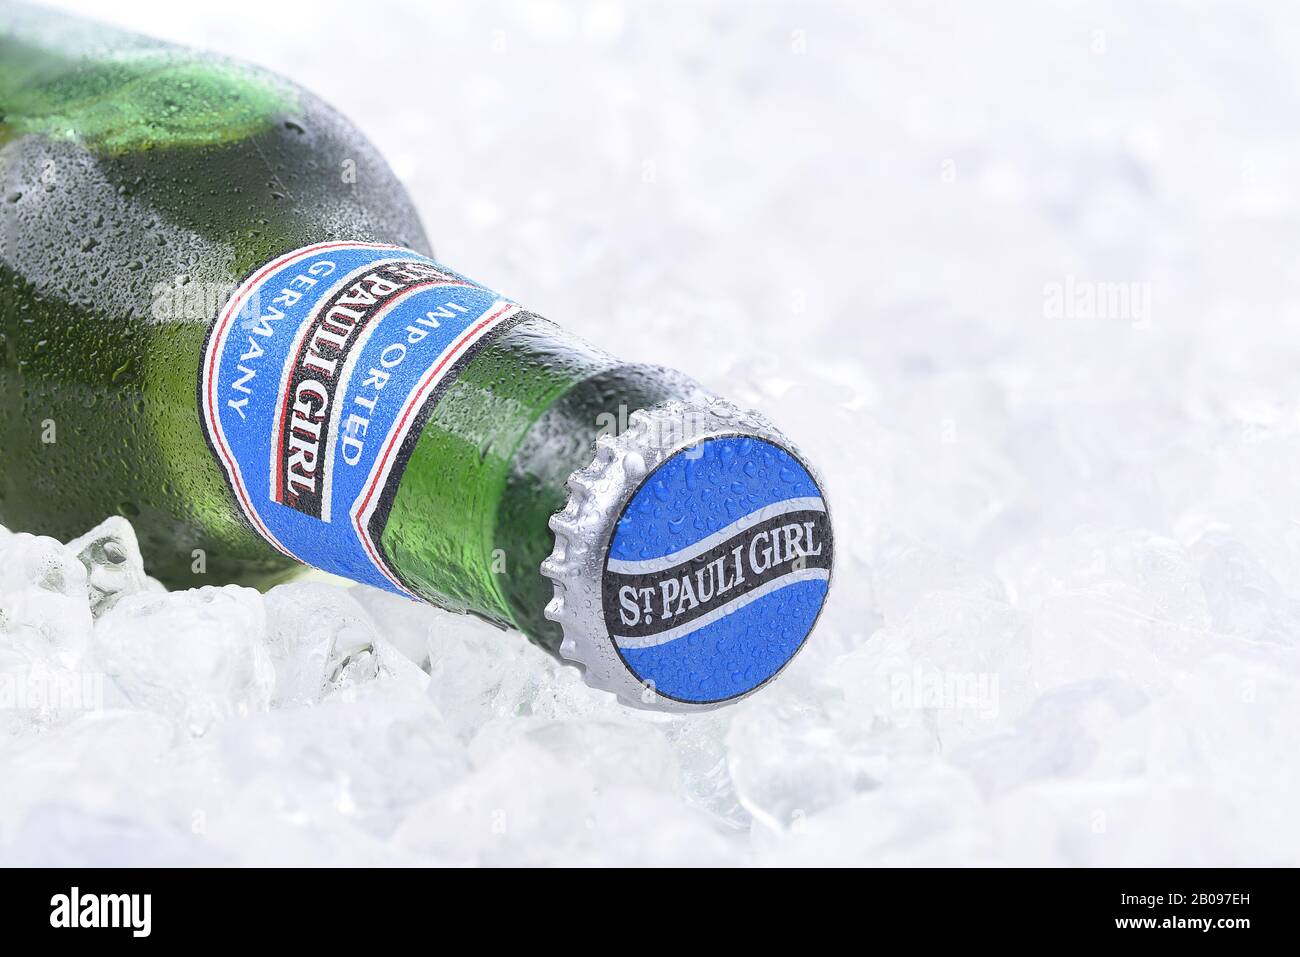 Irvine, California - 26 AGOSTO 2016: Una bottiglia di birra St. Pauli Girl su ghiaccio. Il marchio prende il suo nome dalla sua posizione originale, accanto al Monastero di San Paolo Foto Stock